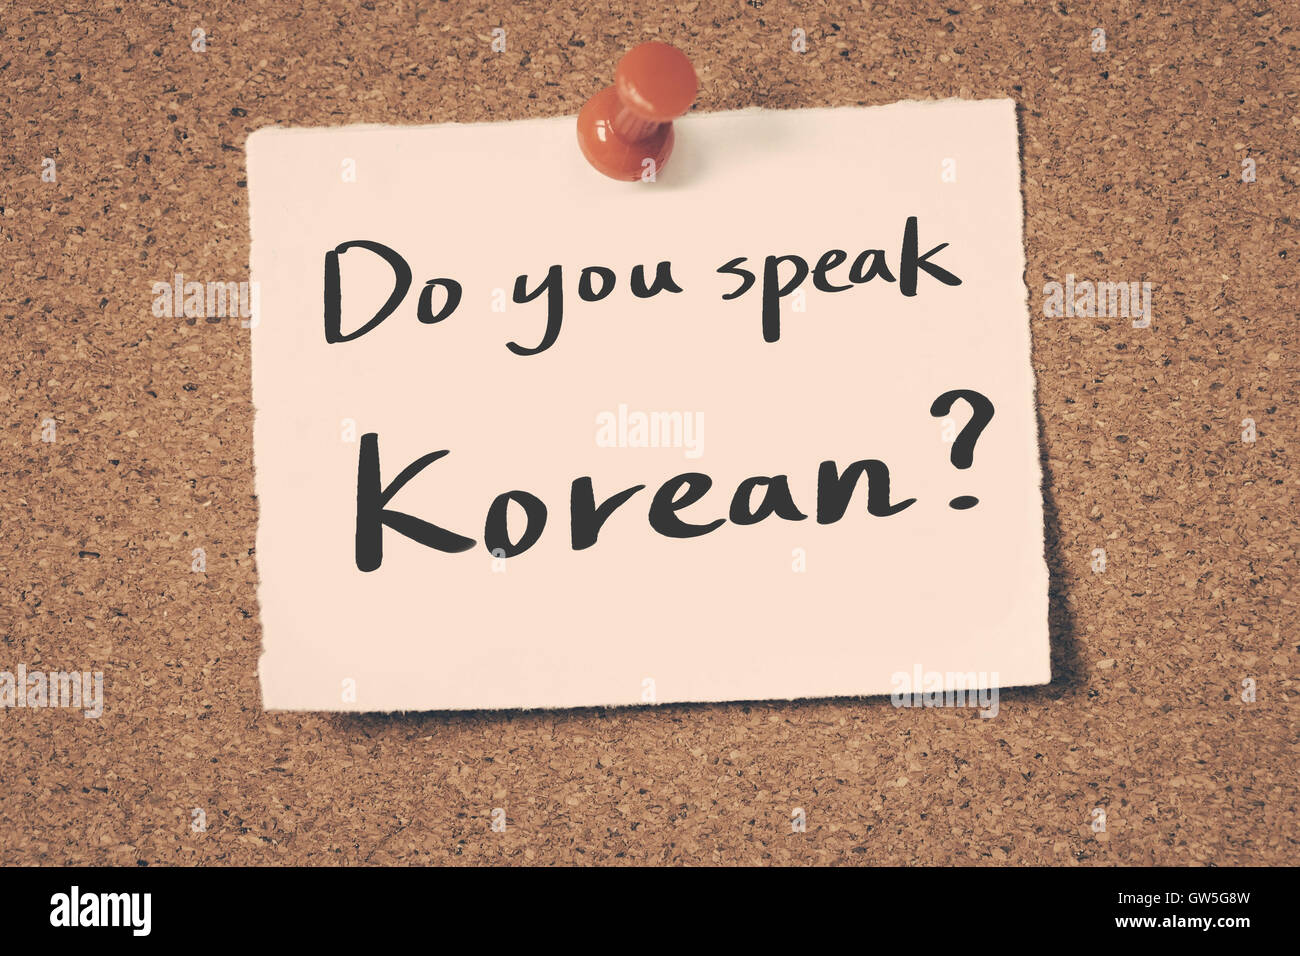 Do you speak Korean Stock Photo - Alamy